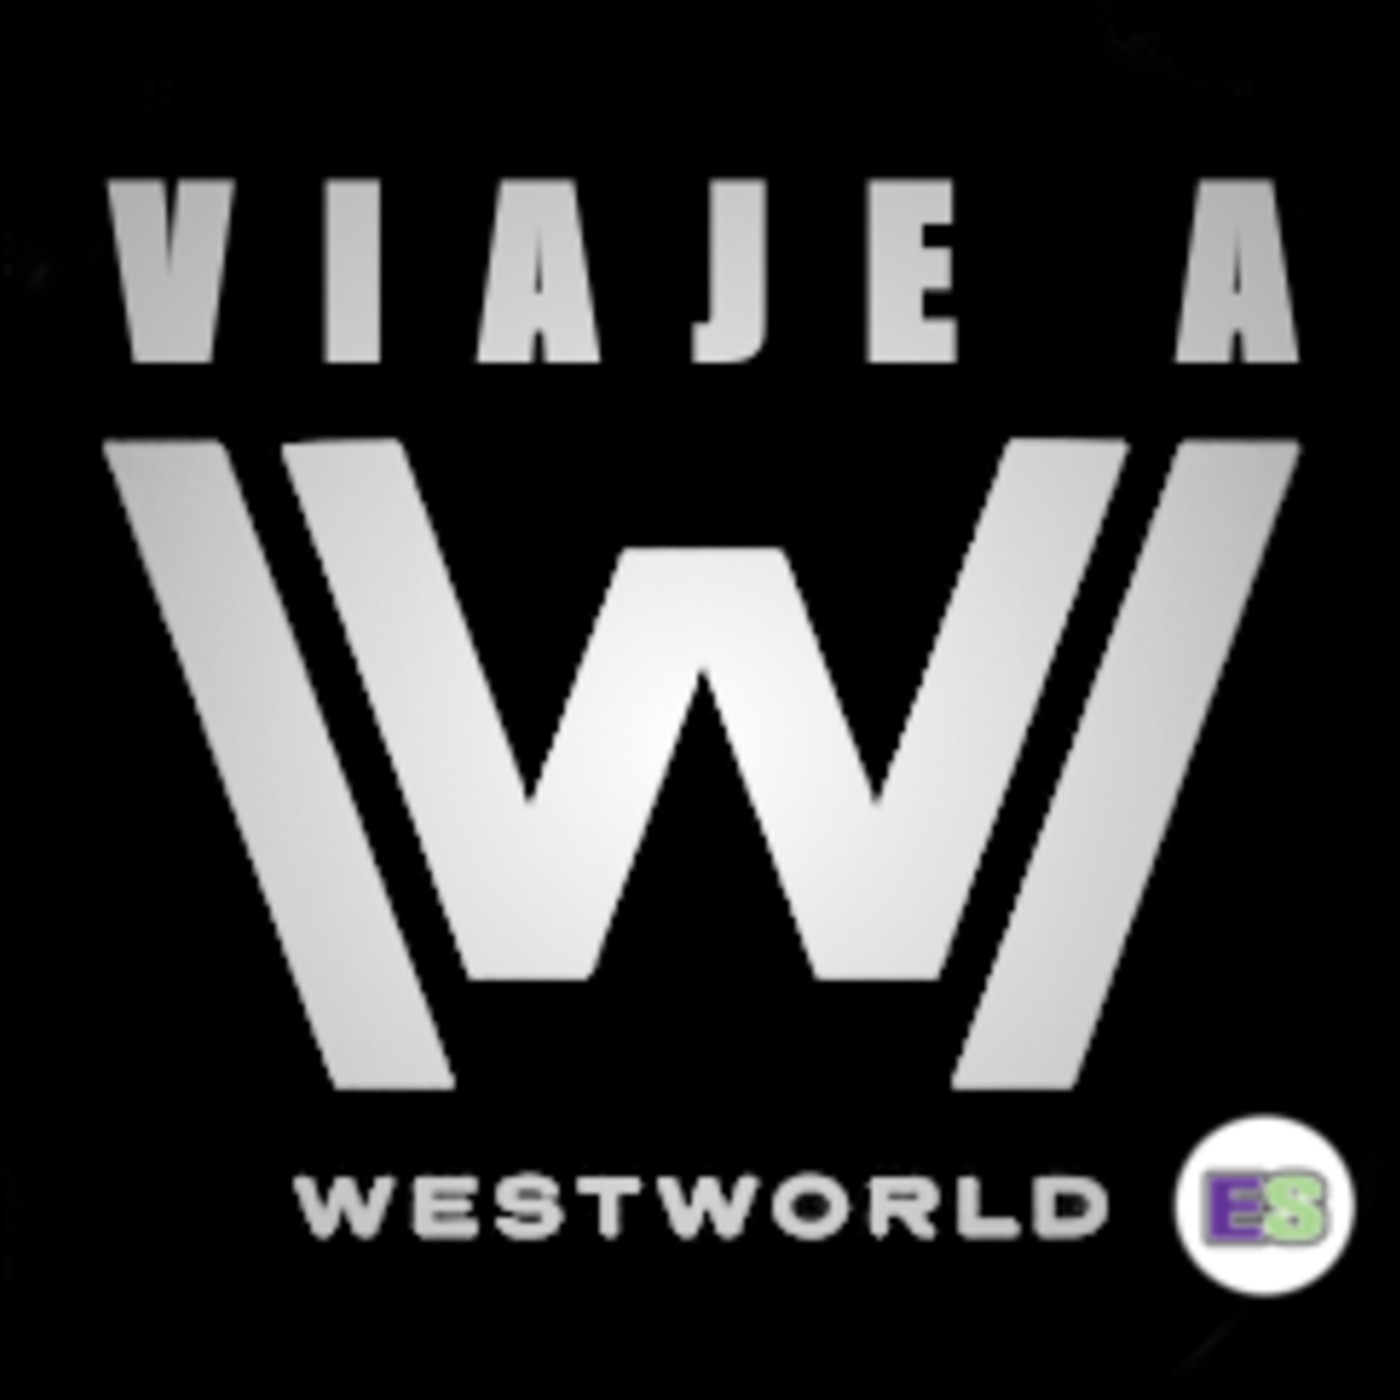 Viaje a Westworld #10 The Bicameral Mind